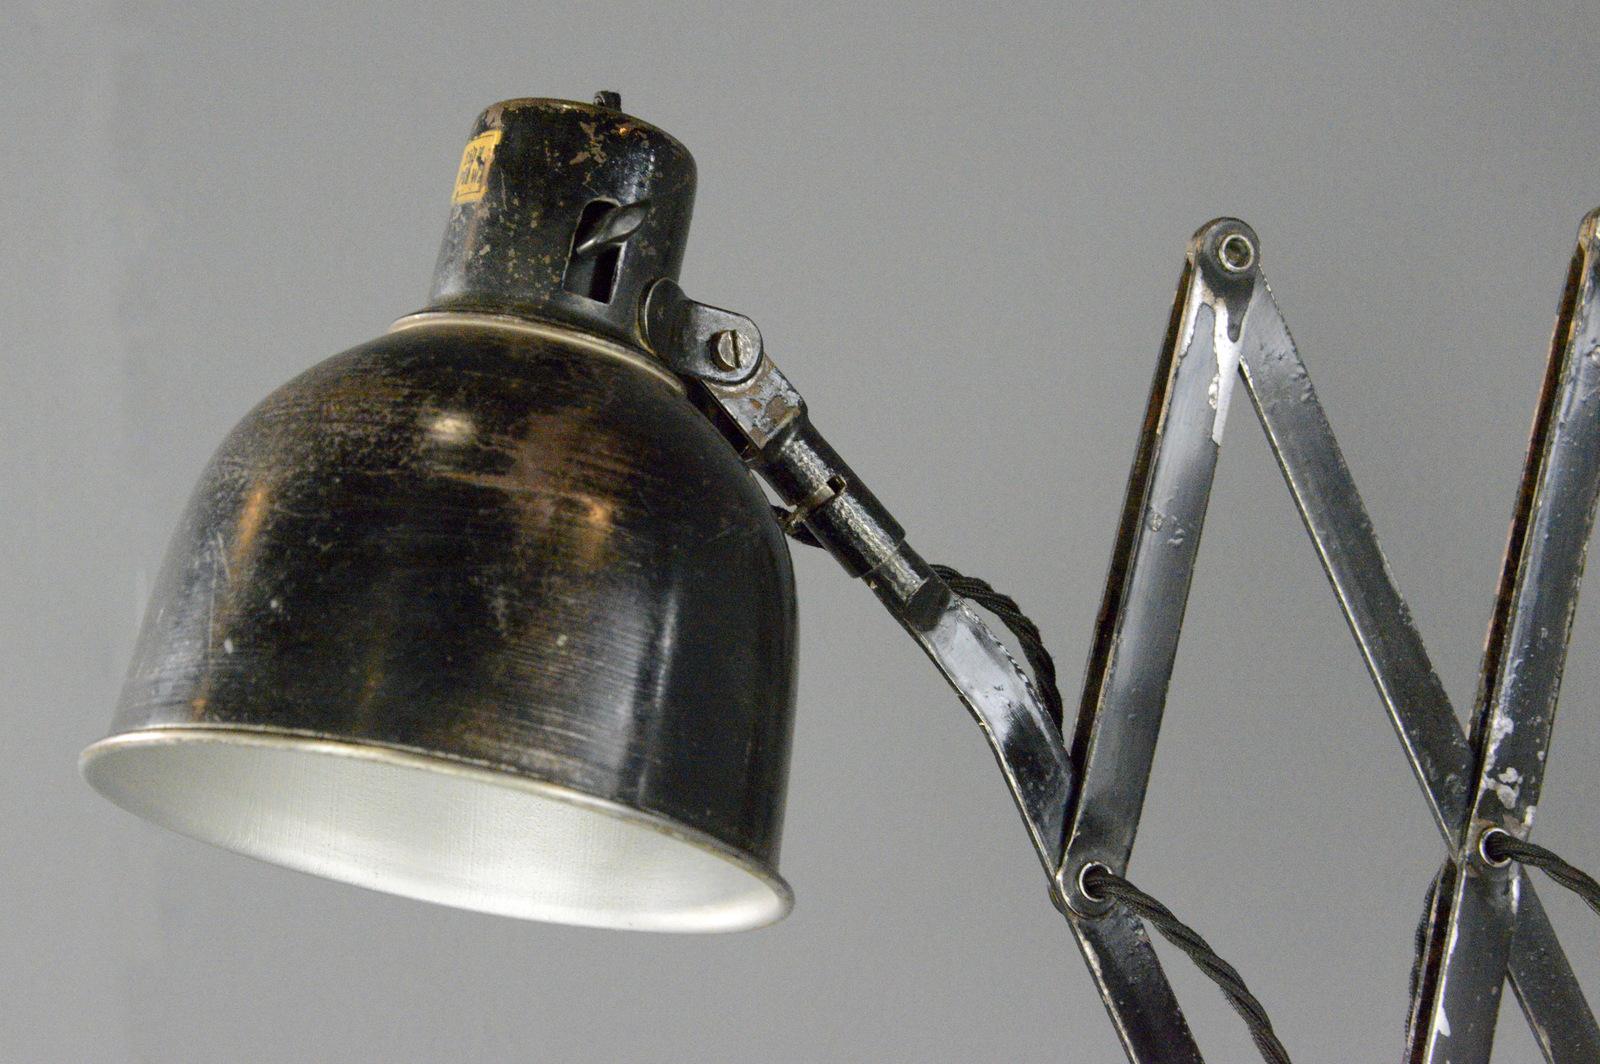 Lampe à ciseaux industrielle par PeHaWe Circa 1930s

- Grand ciseau extensible
- Convient aux ampoules E27
- Interrupteur à bascule marche/arrêt d'origine sur l'abat-jour
- Fabriqué par PeHaWe, Dresde
- Allemand ~ années 1930
- S'étend jusqu'à 120